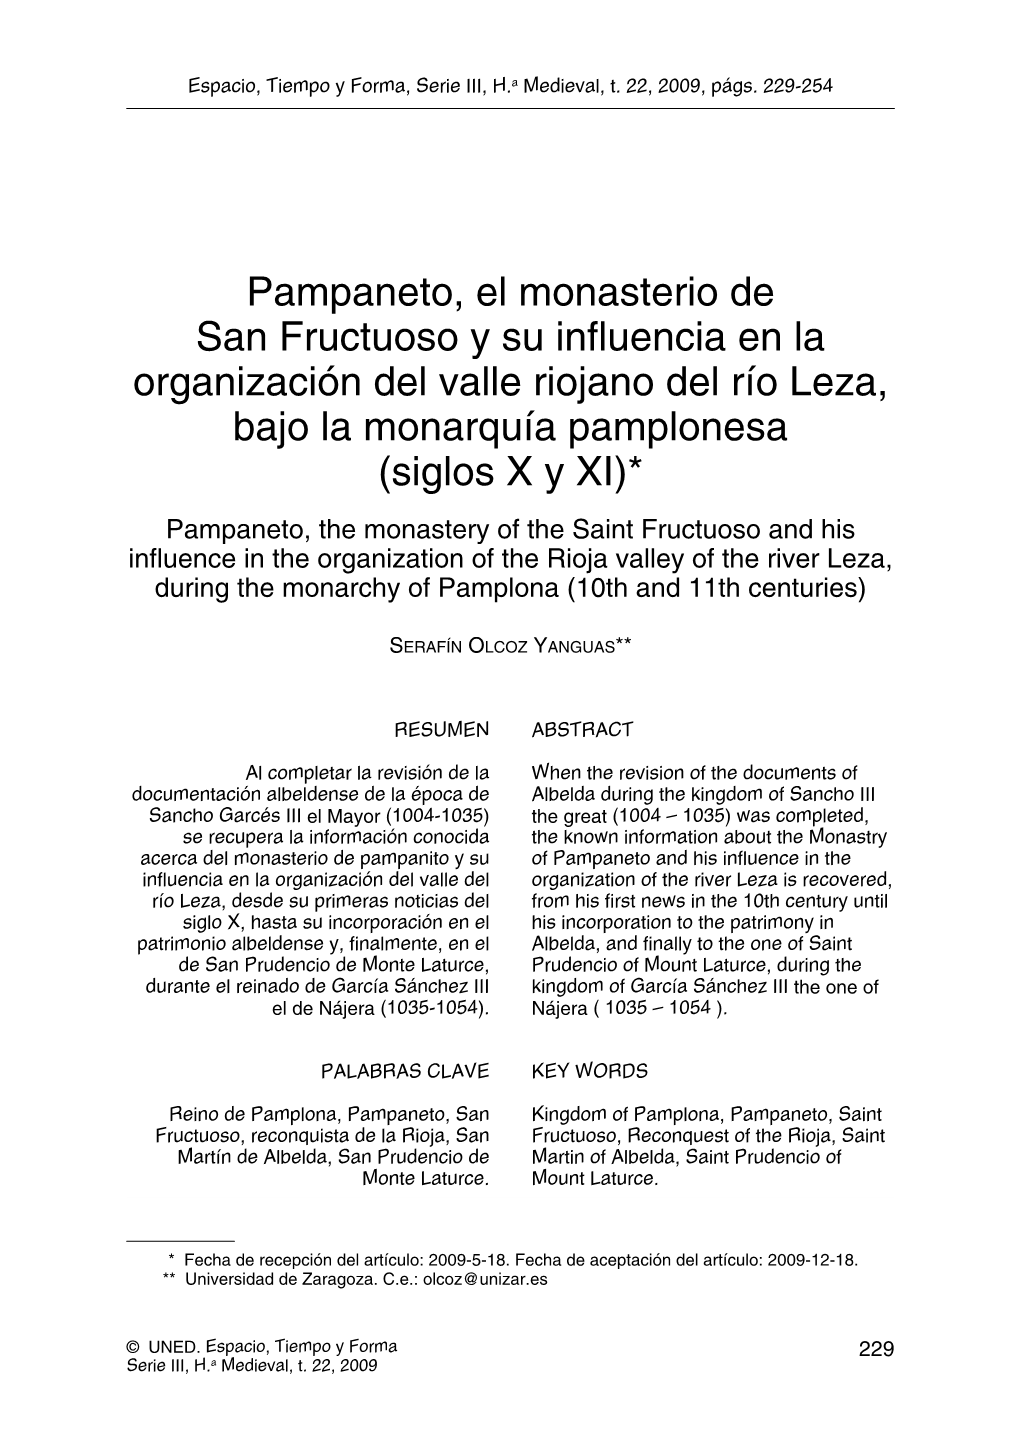 Pampaneto, El Monasterio De San Fructuoso Y Su Influencia En La Organización Del Valle Riojano Del Río Leza, Bajo La Monarquí